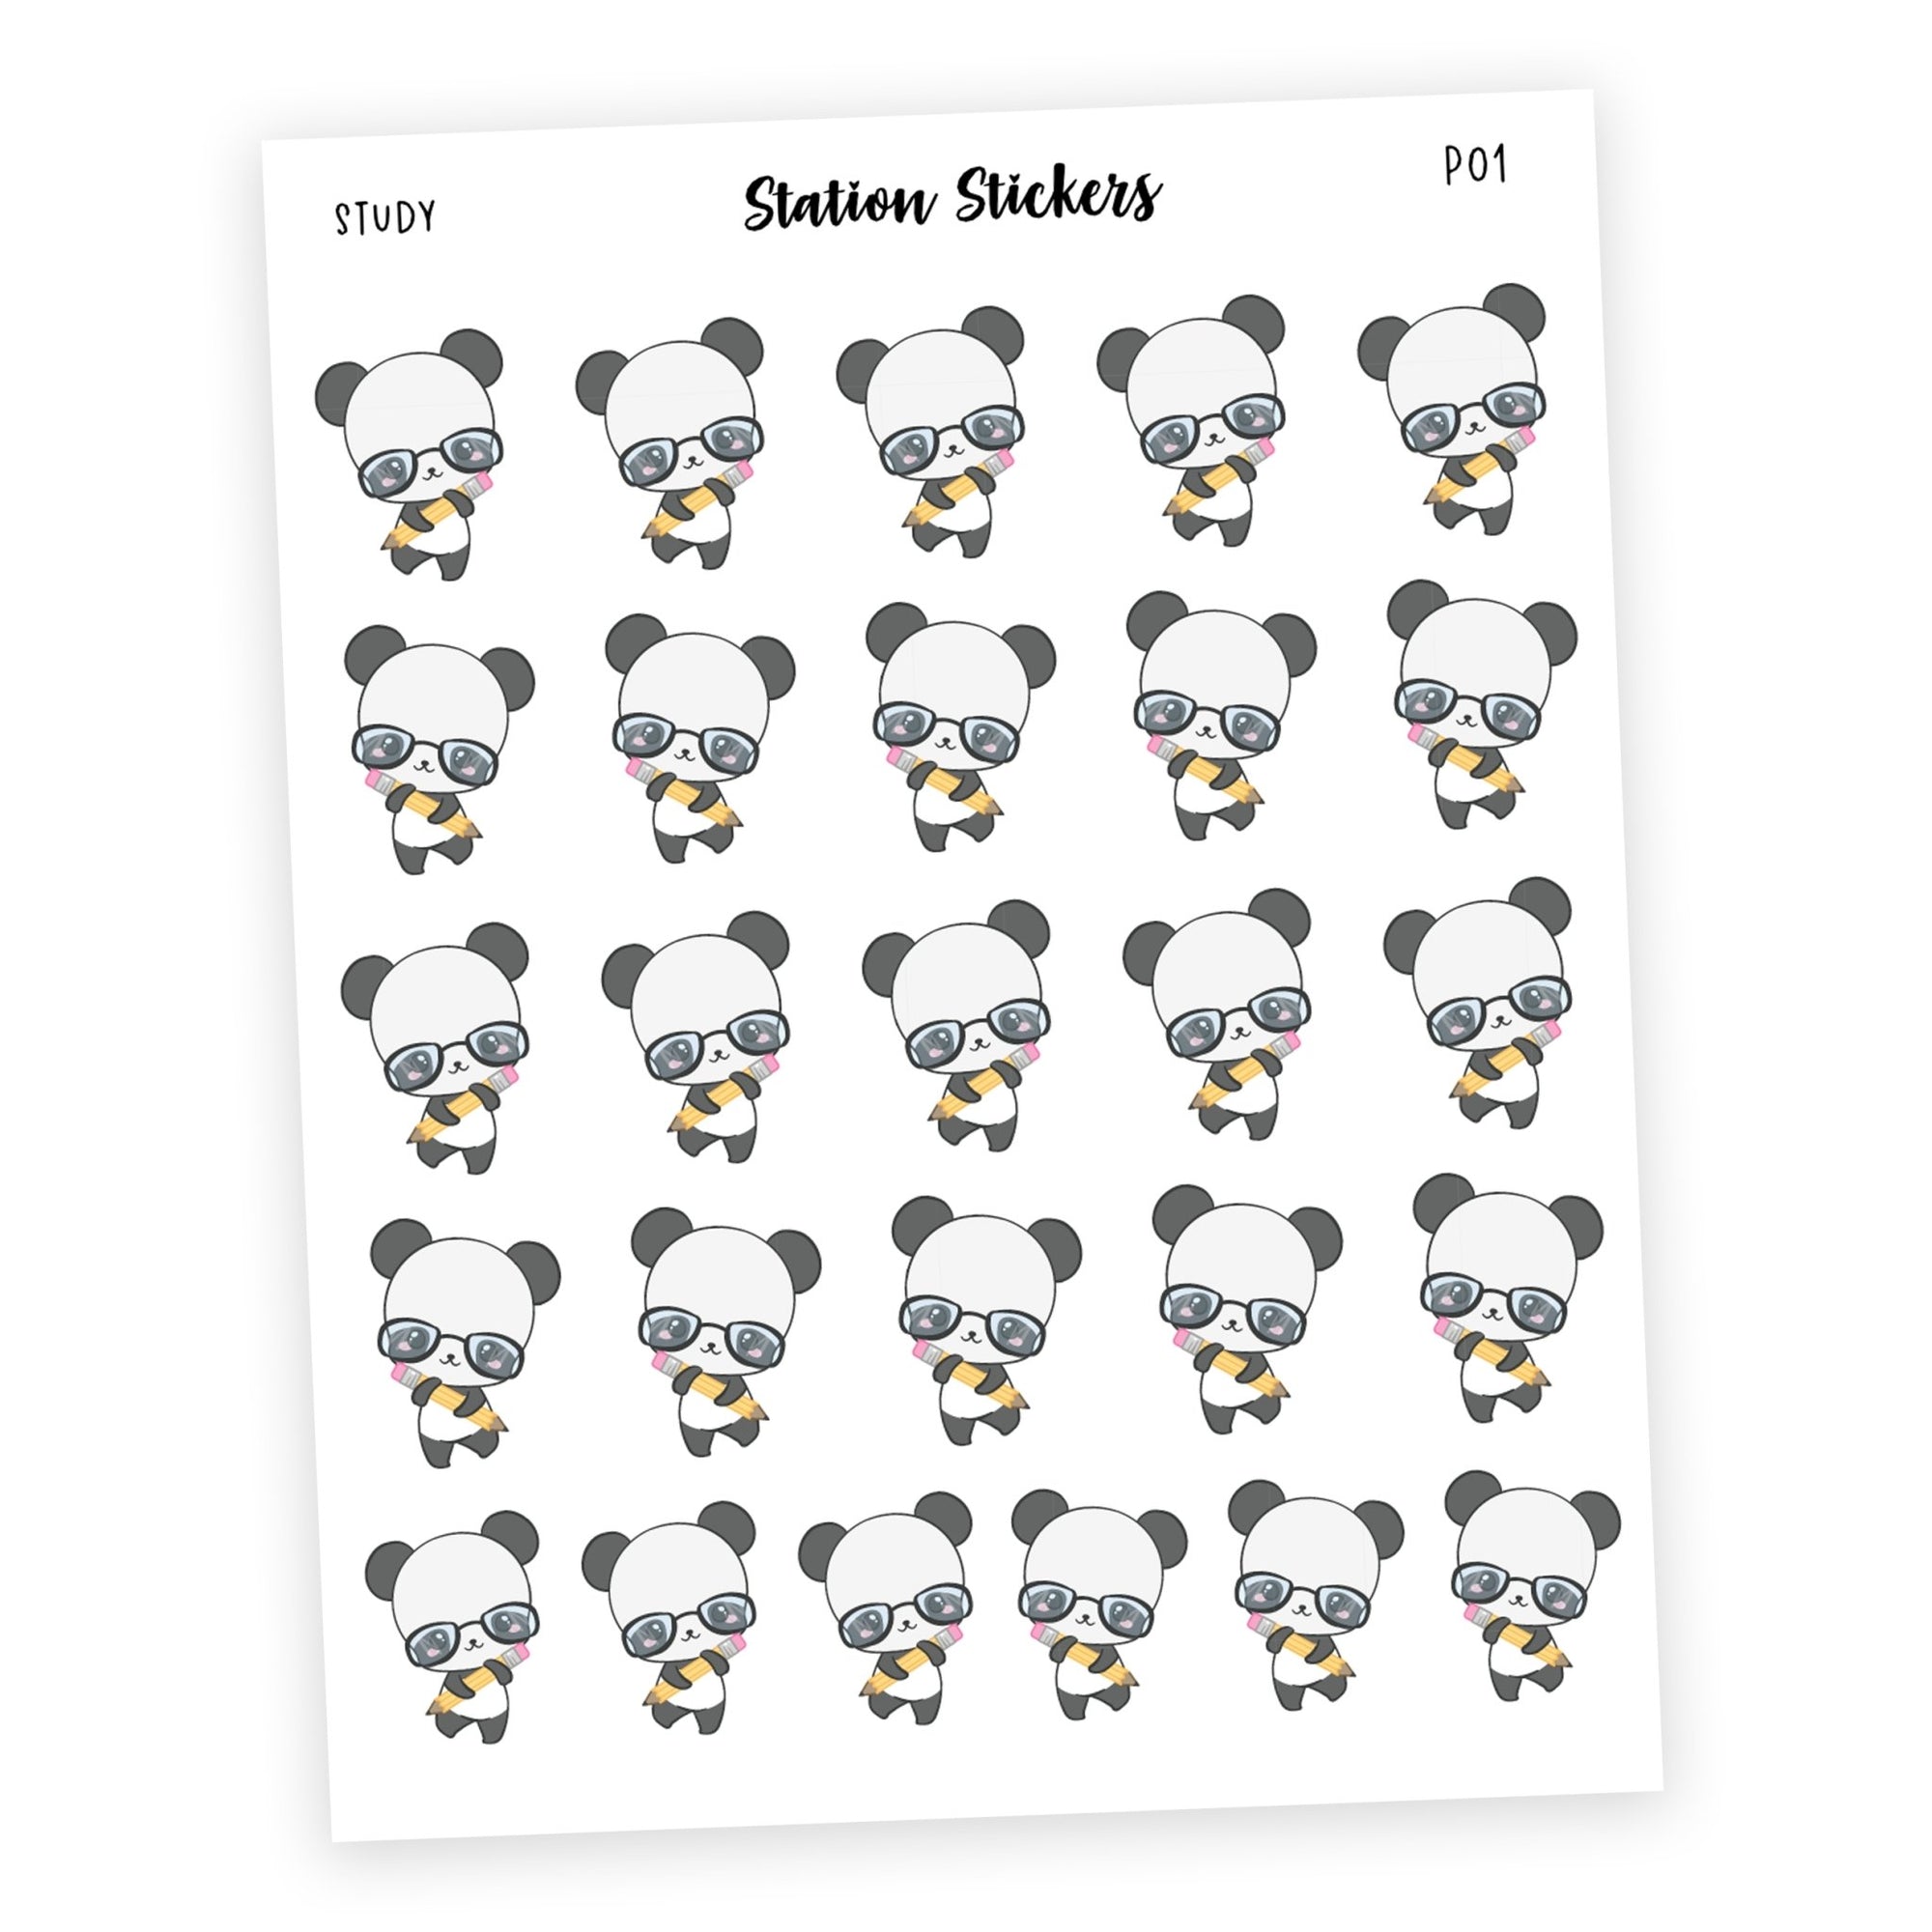 STUDY • PANDA - Station Stickers